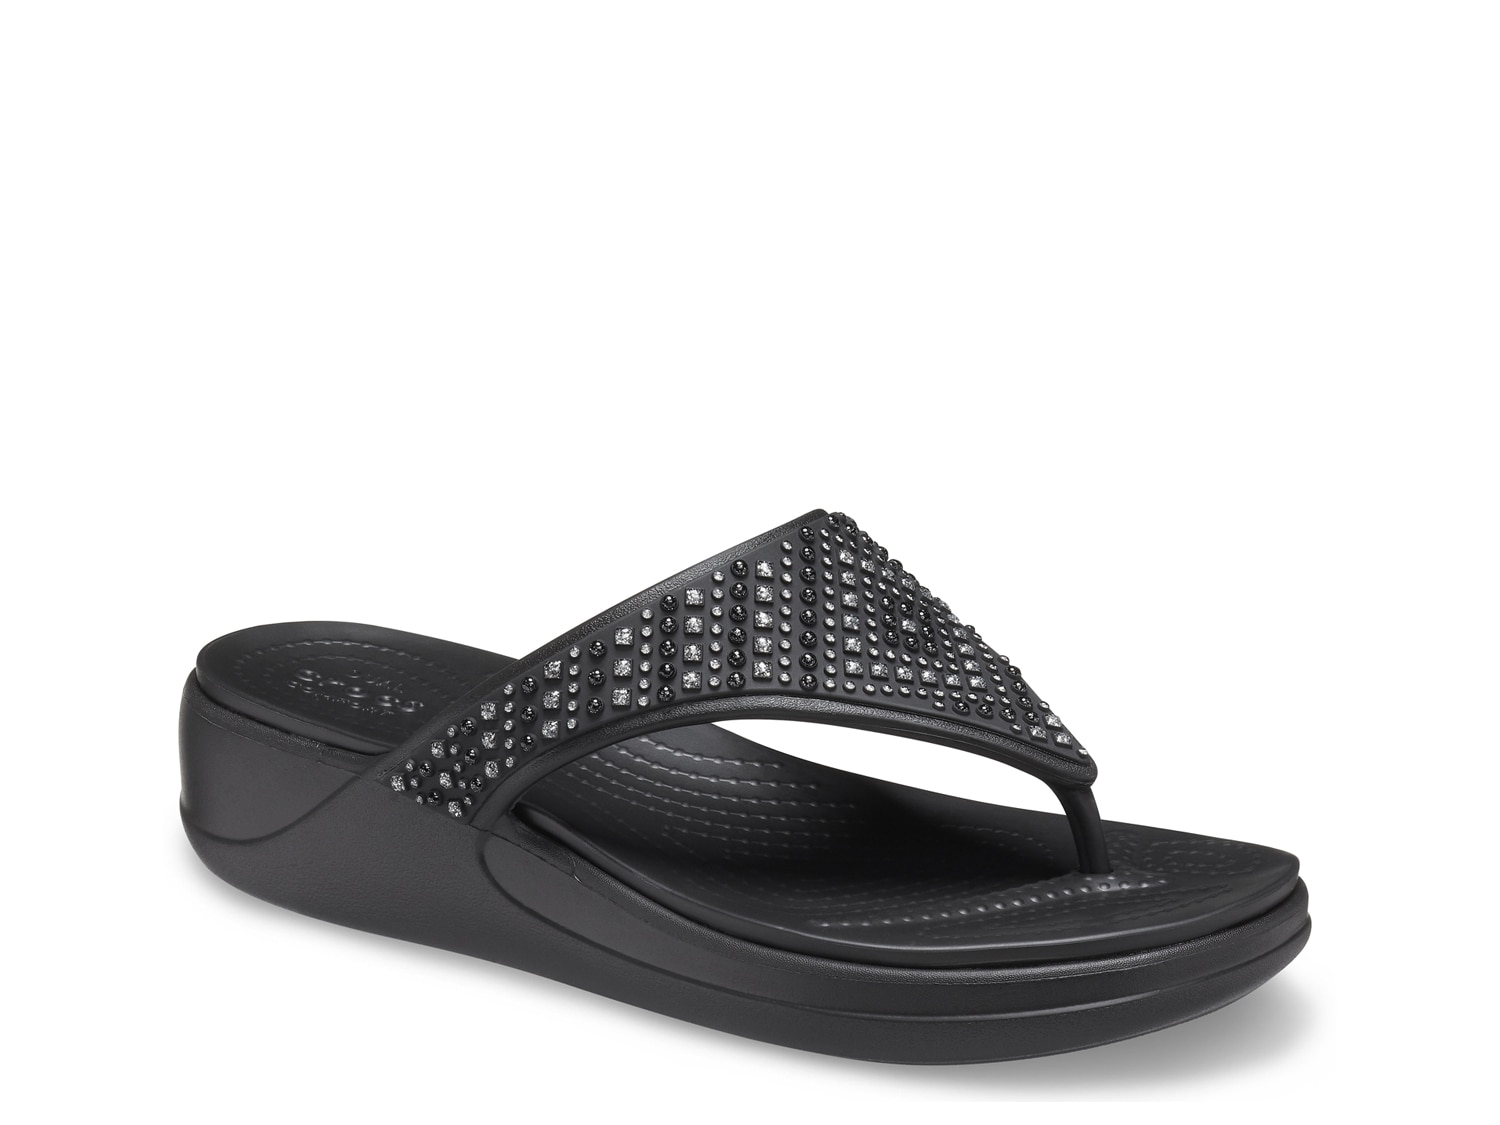 Women's Black Crocs Flip Flop Sandals | DSW